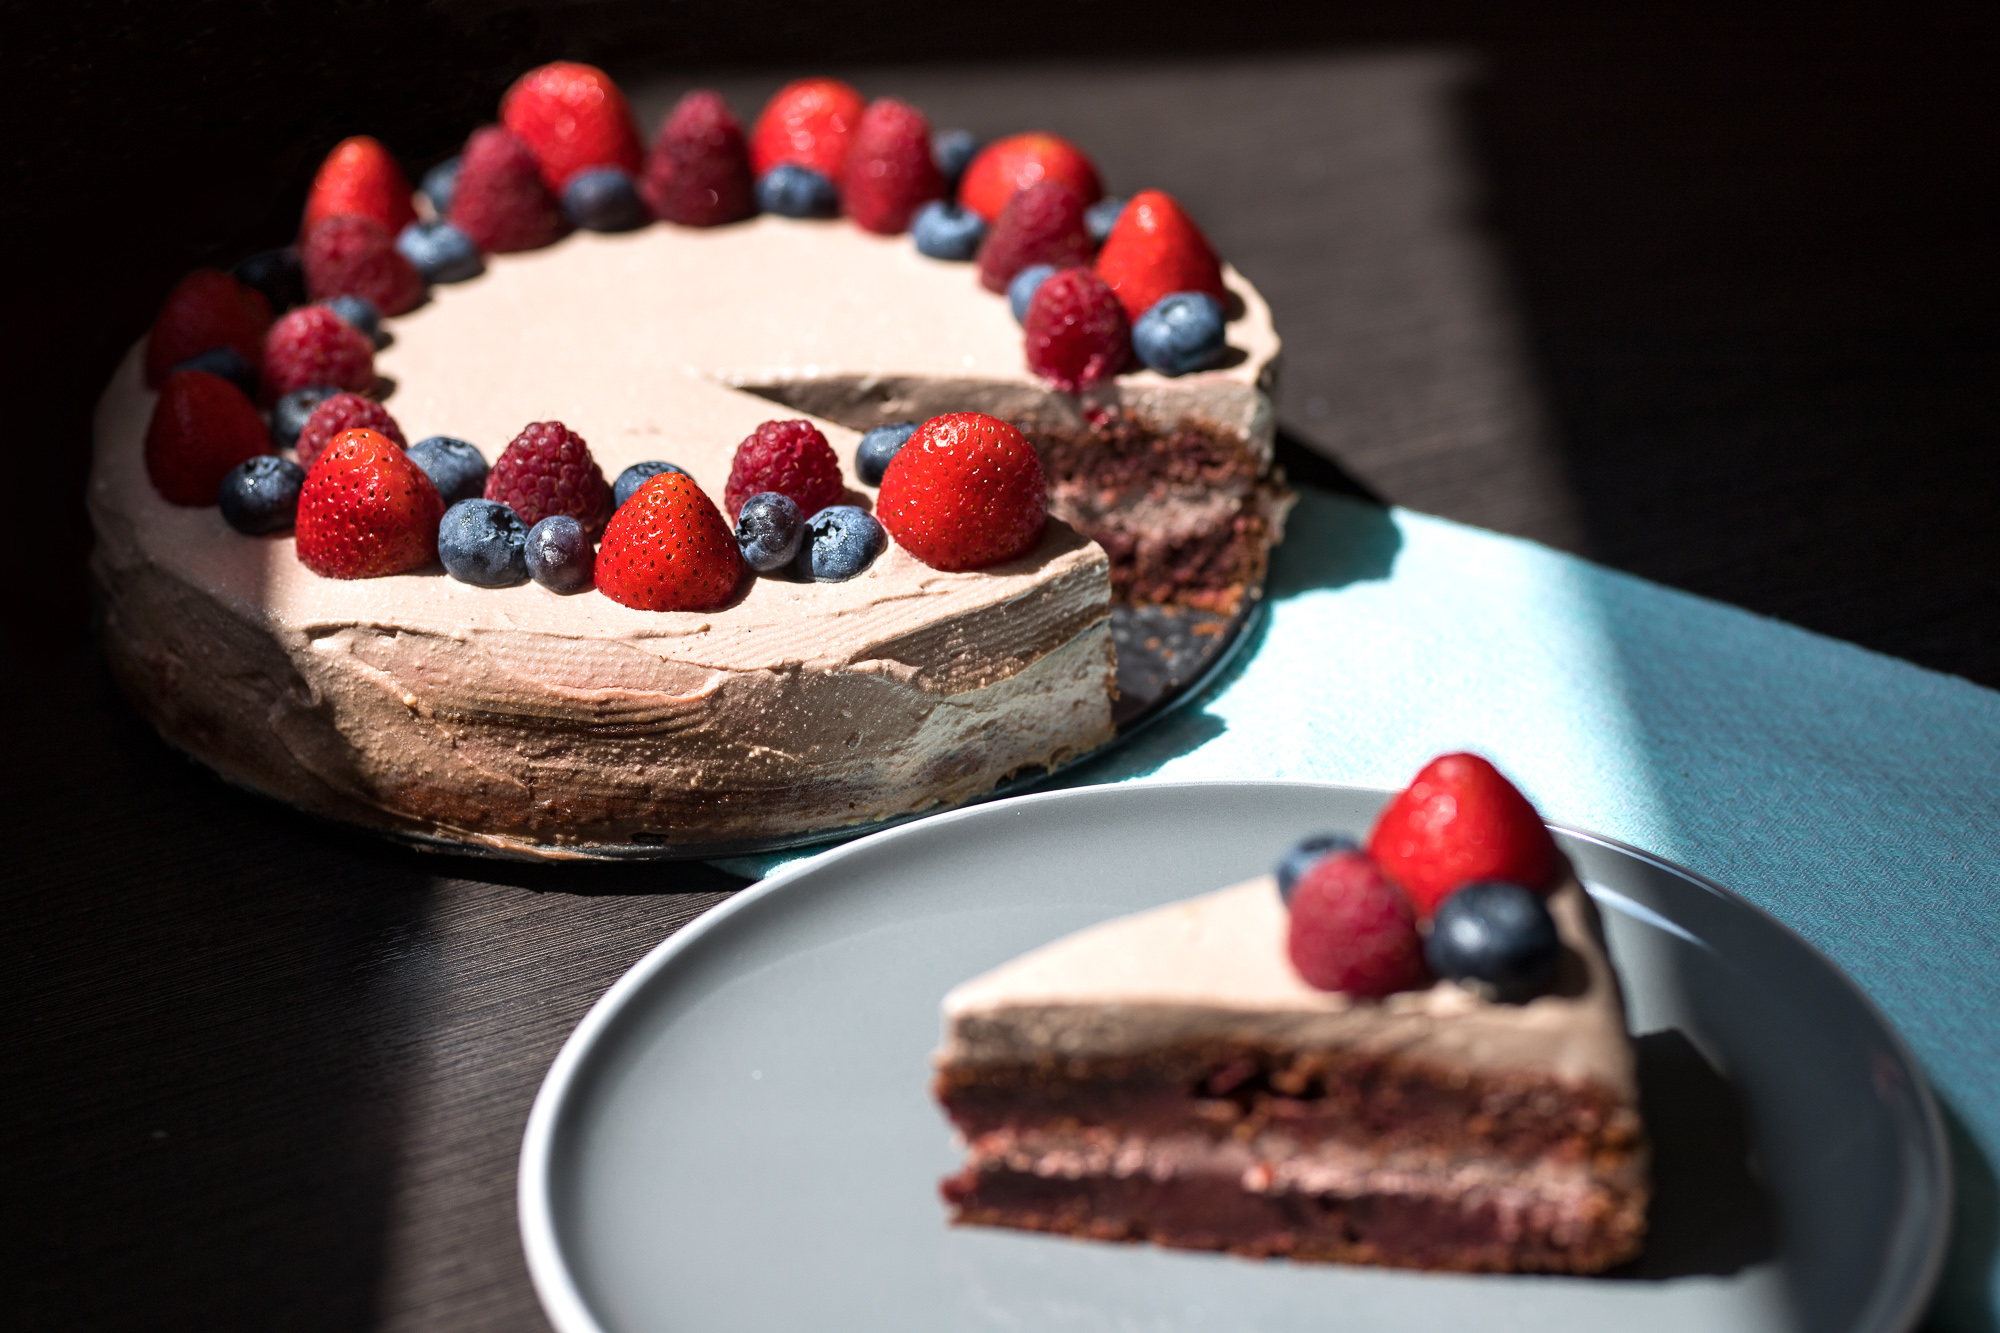 Famózna čokoládová cviklová torta bez lepku s tvarohovým krémom.